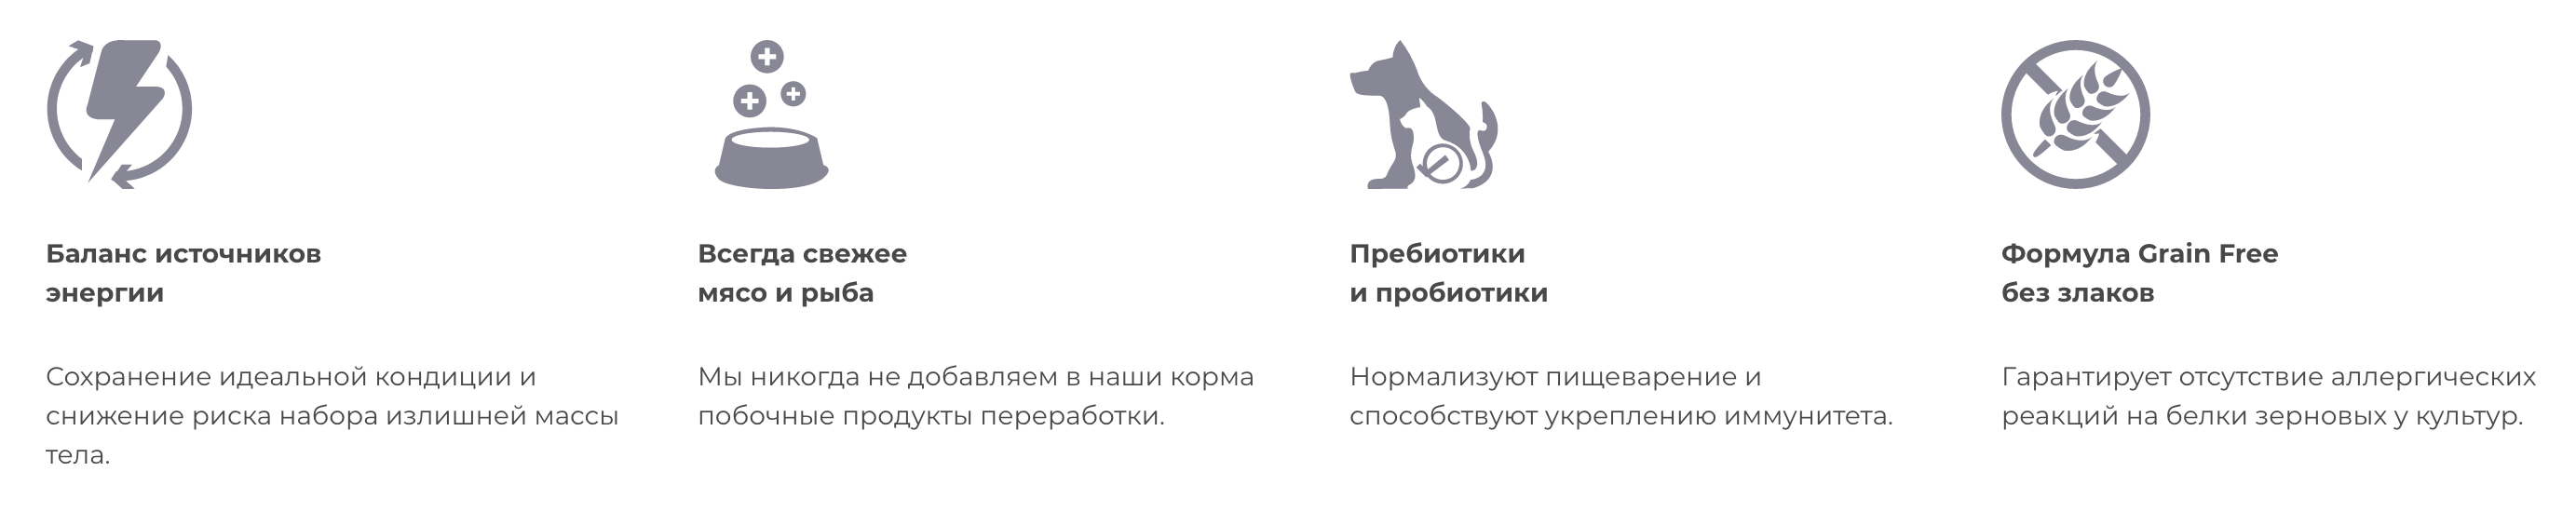 купить Wellness CORE Lamb для взрослых собак 1,8 кг с бесплатной доставкой в Калининграде